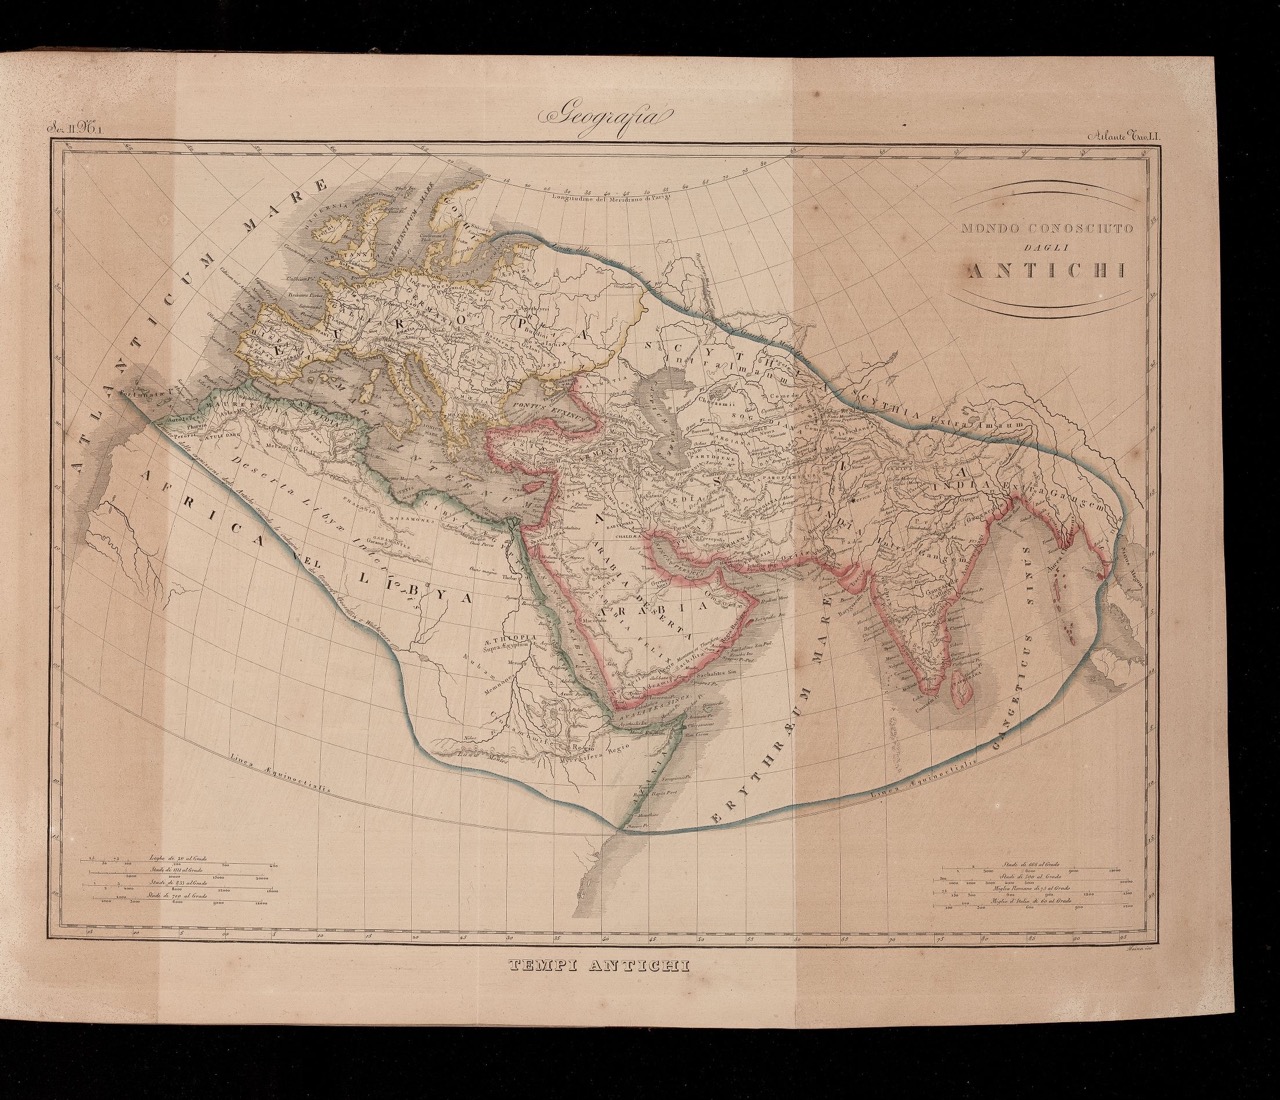 Marmocchi: Geografia-storica 1845, "Mondo Conosciuto dagli Antichi"